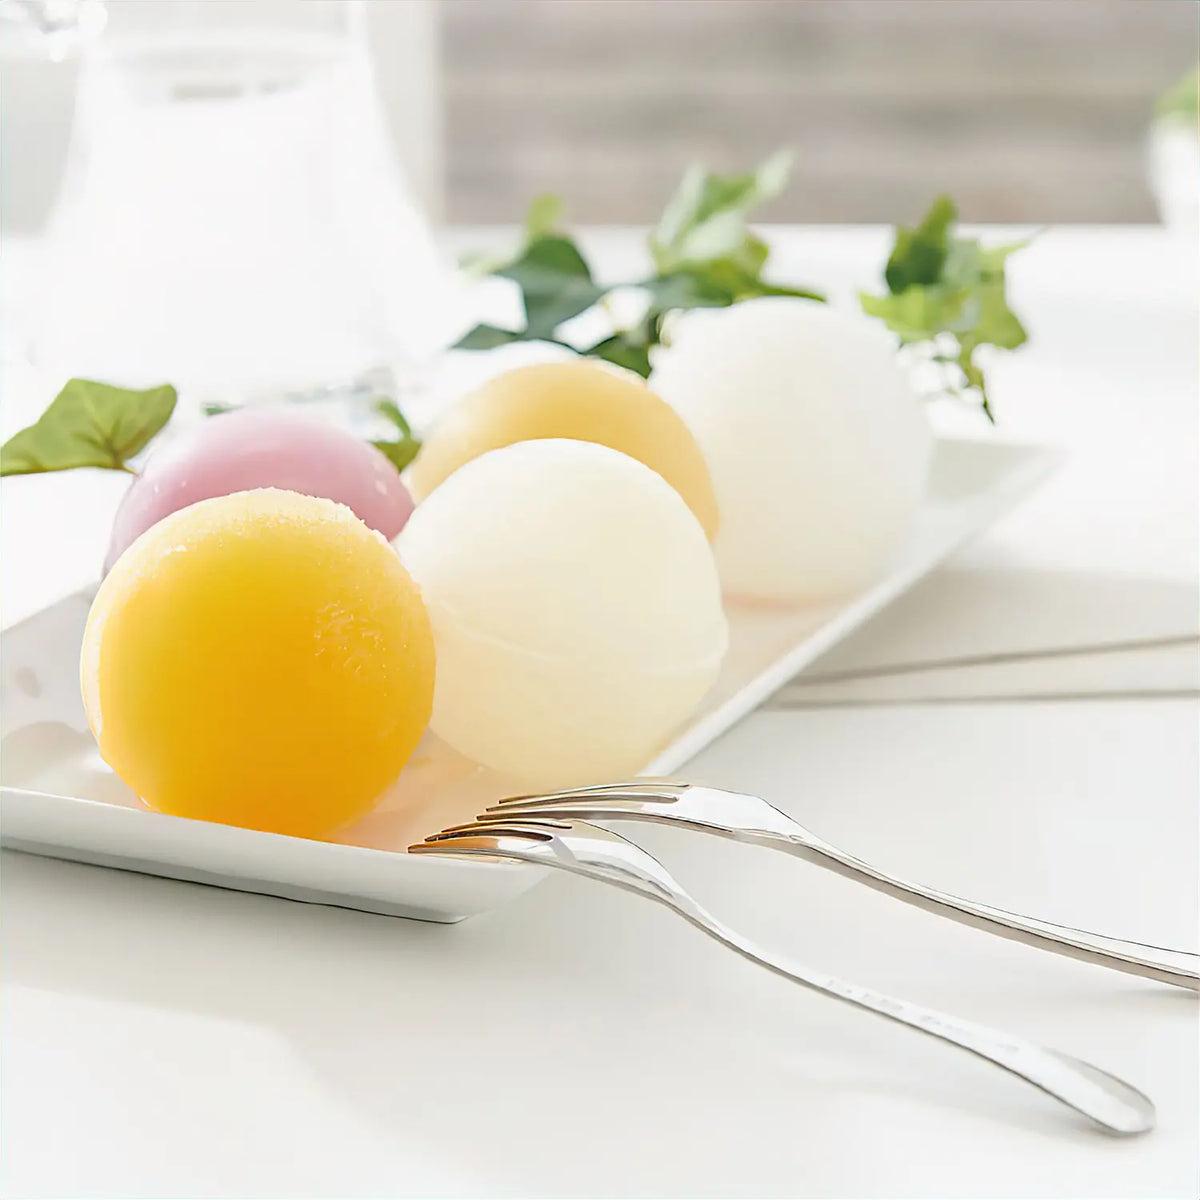 6Pcs Microwave Egg Cooker Egg Steamed Cups Holder Oven Egg Steamer Omlette  Maker